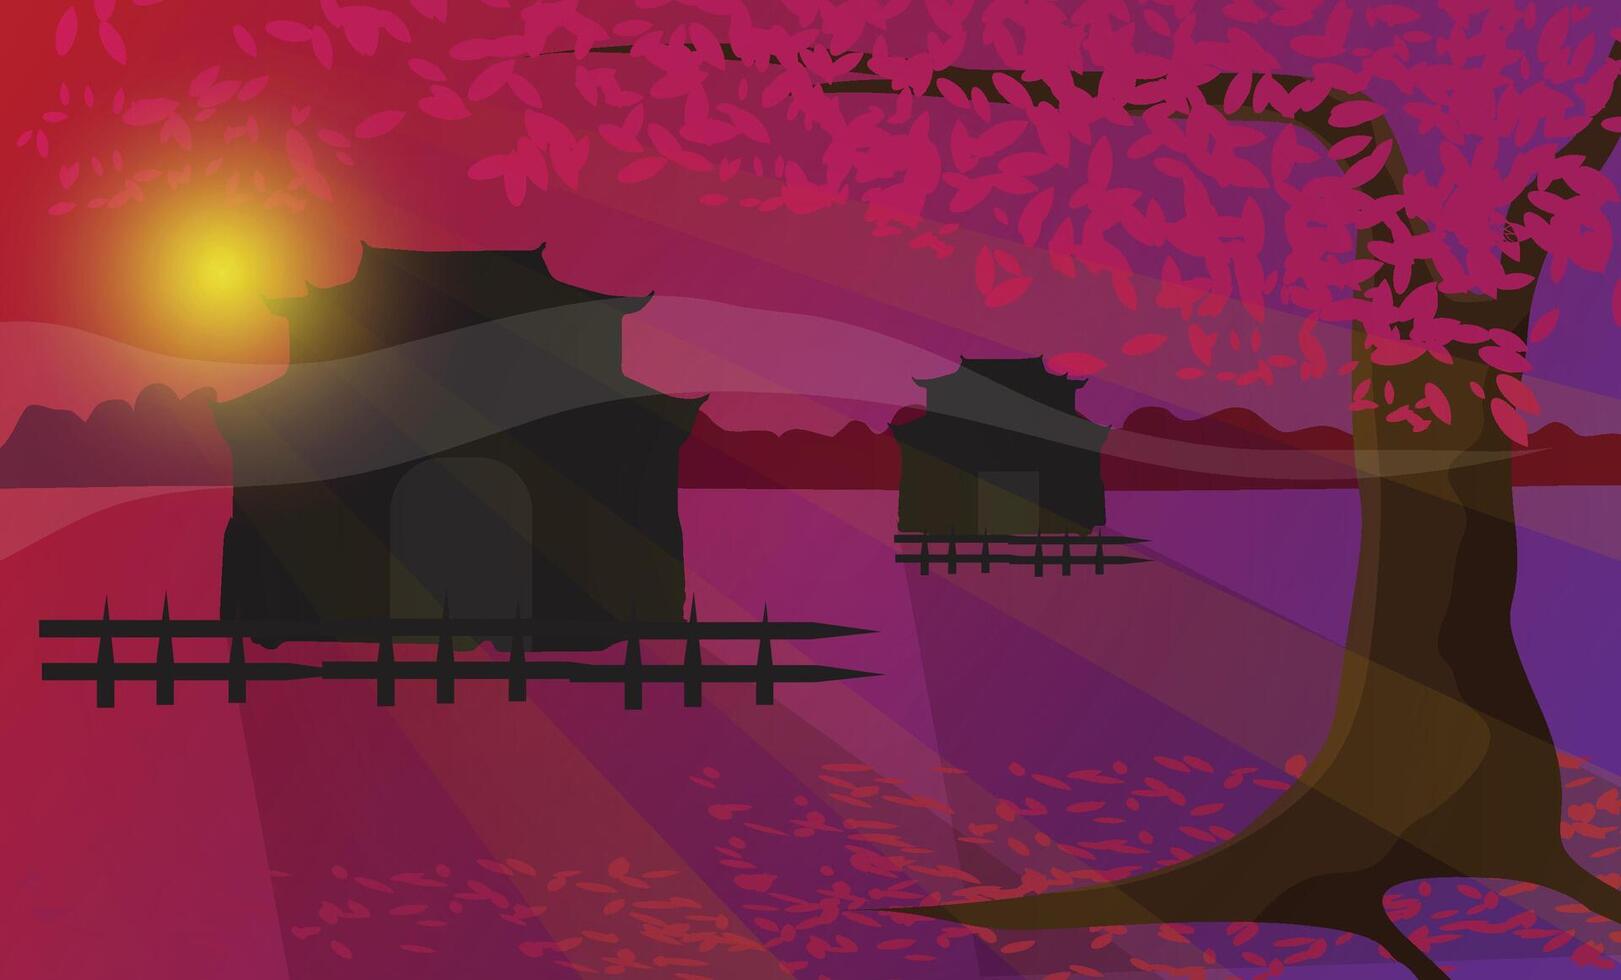 schön Fantasie Landschaft Hintergrund mit Rosa Blatt japanisch Baum und Buddhist Tempel Silhouette mit Sonnenaufgang oder Sonnenuntergang Sicht. fallen Jahreszeit Konzept Illustration. vektor